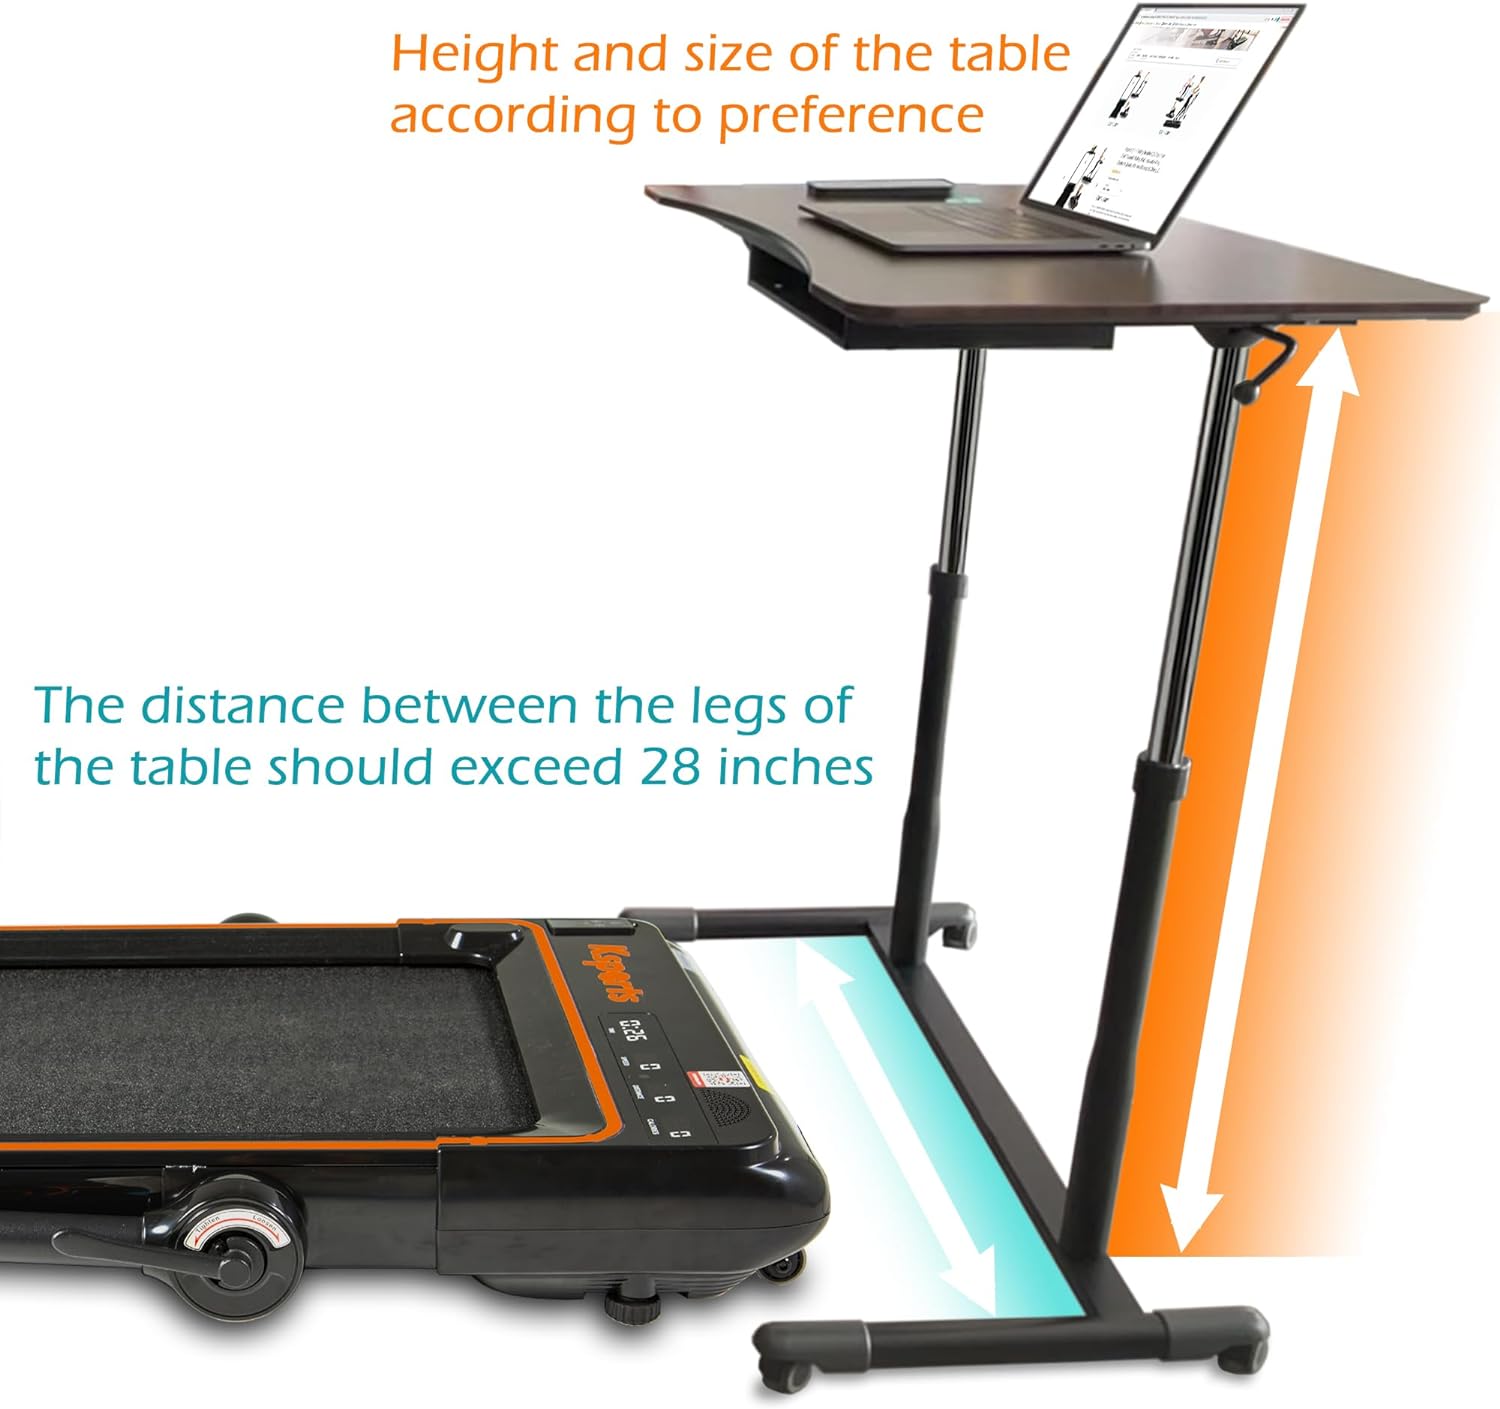 Ksports 3 in 1 Folding Treadmill Orange (2.25HP/Max: 265lbs) - Model KSU3001